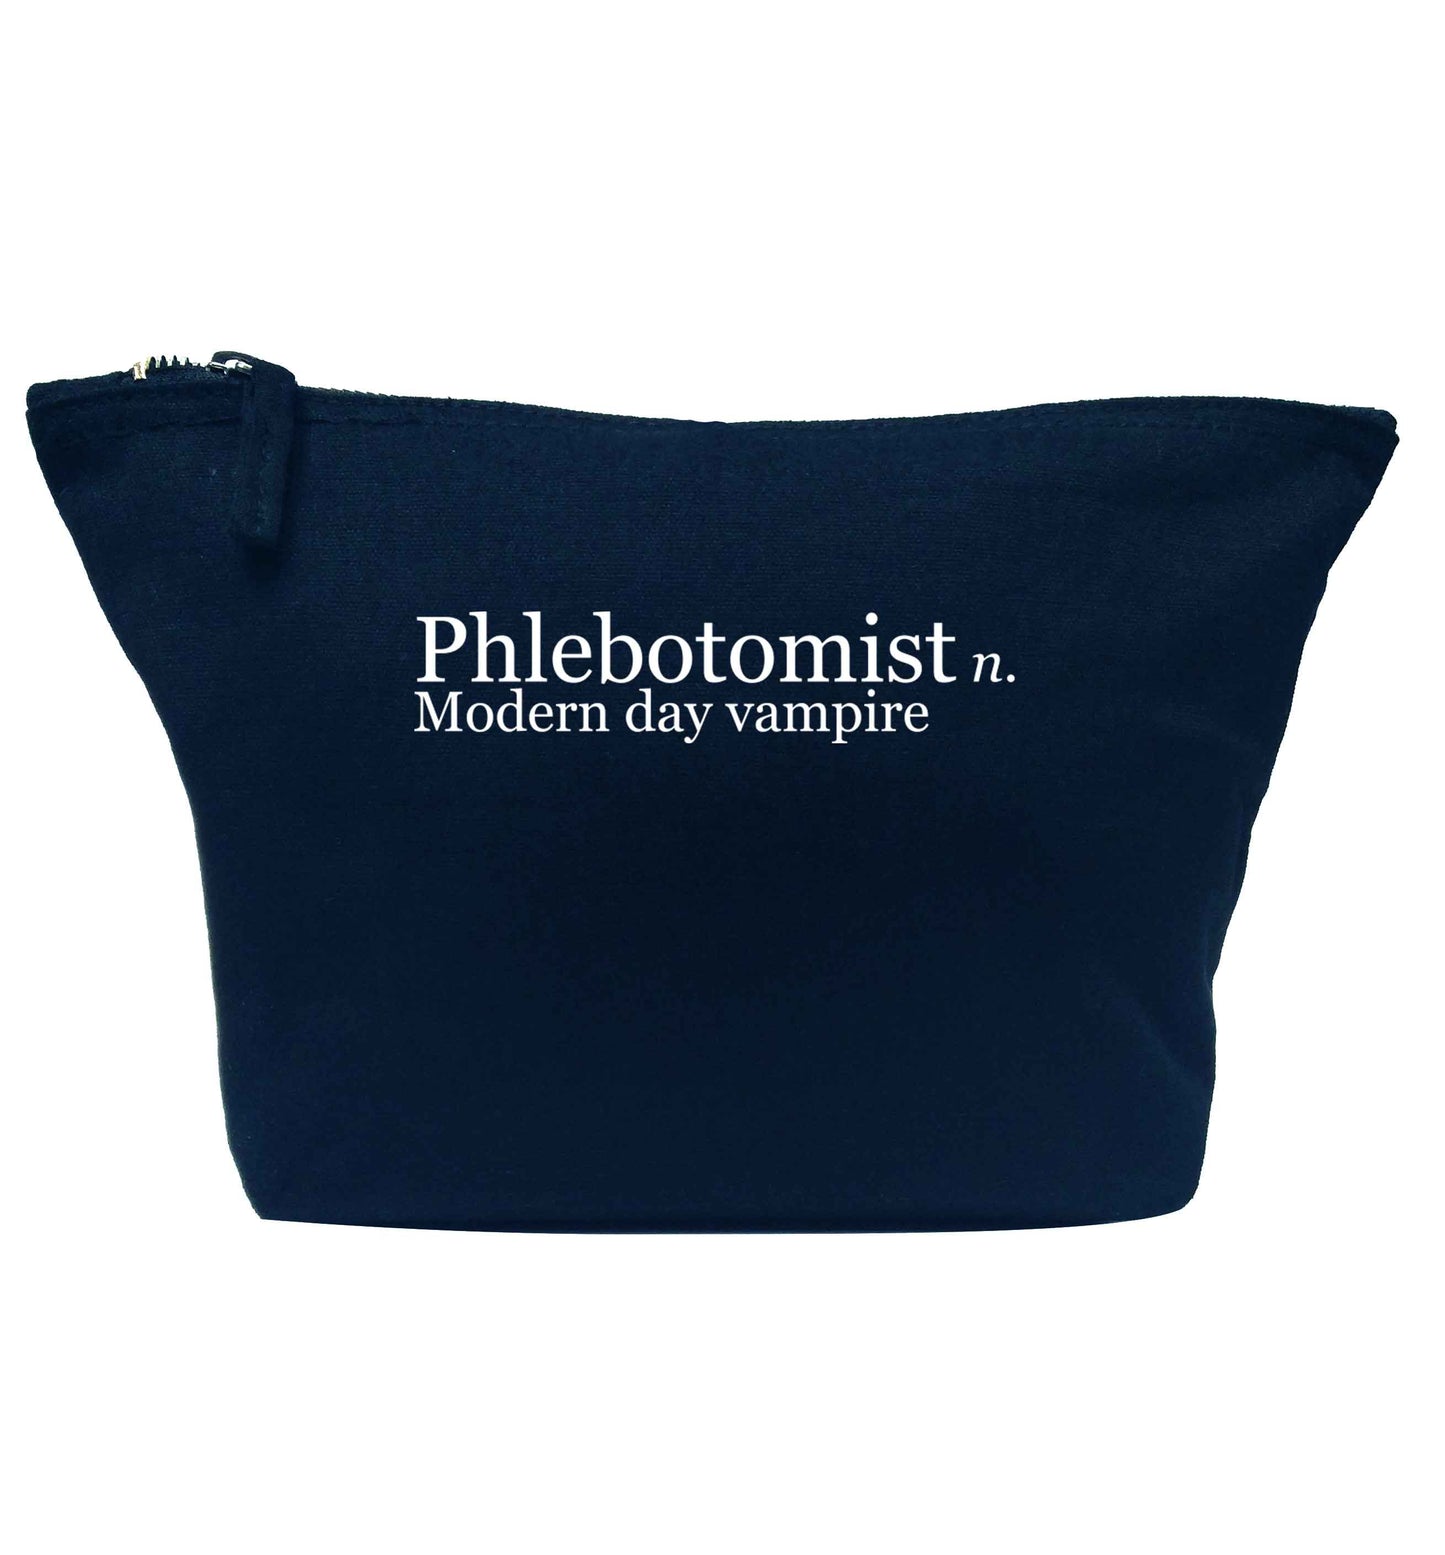 Phlebotomist - Modern day vampire navy makeup bag